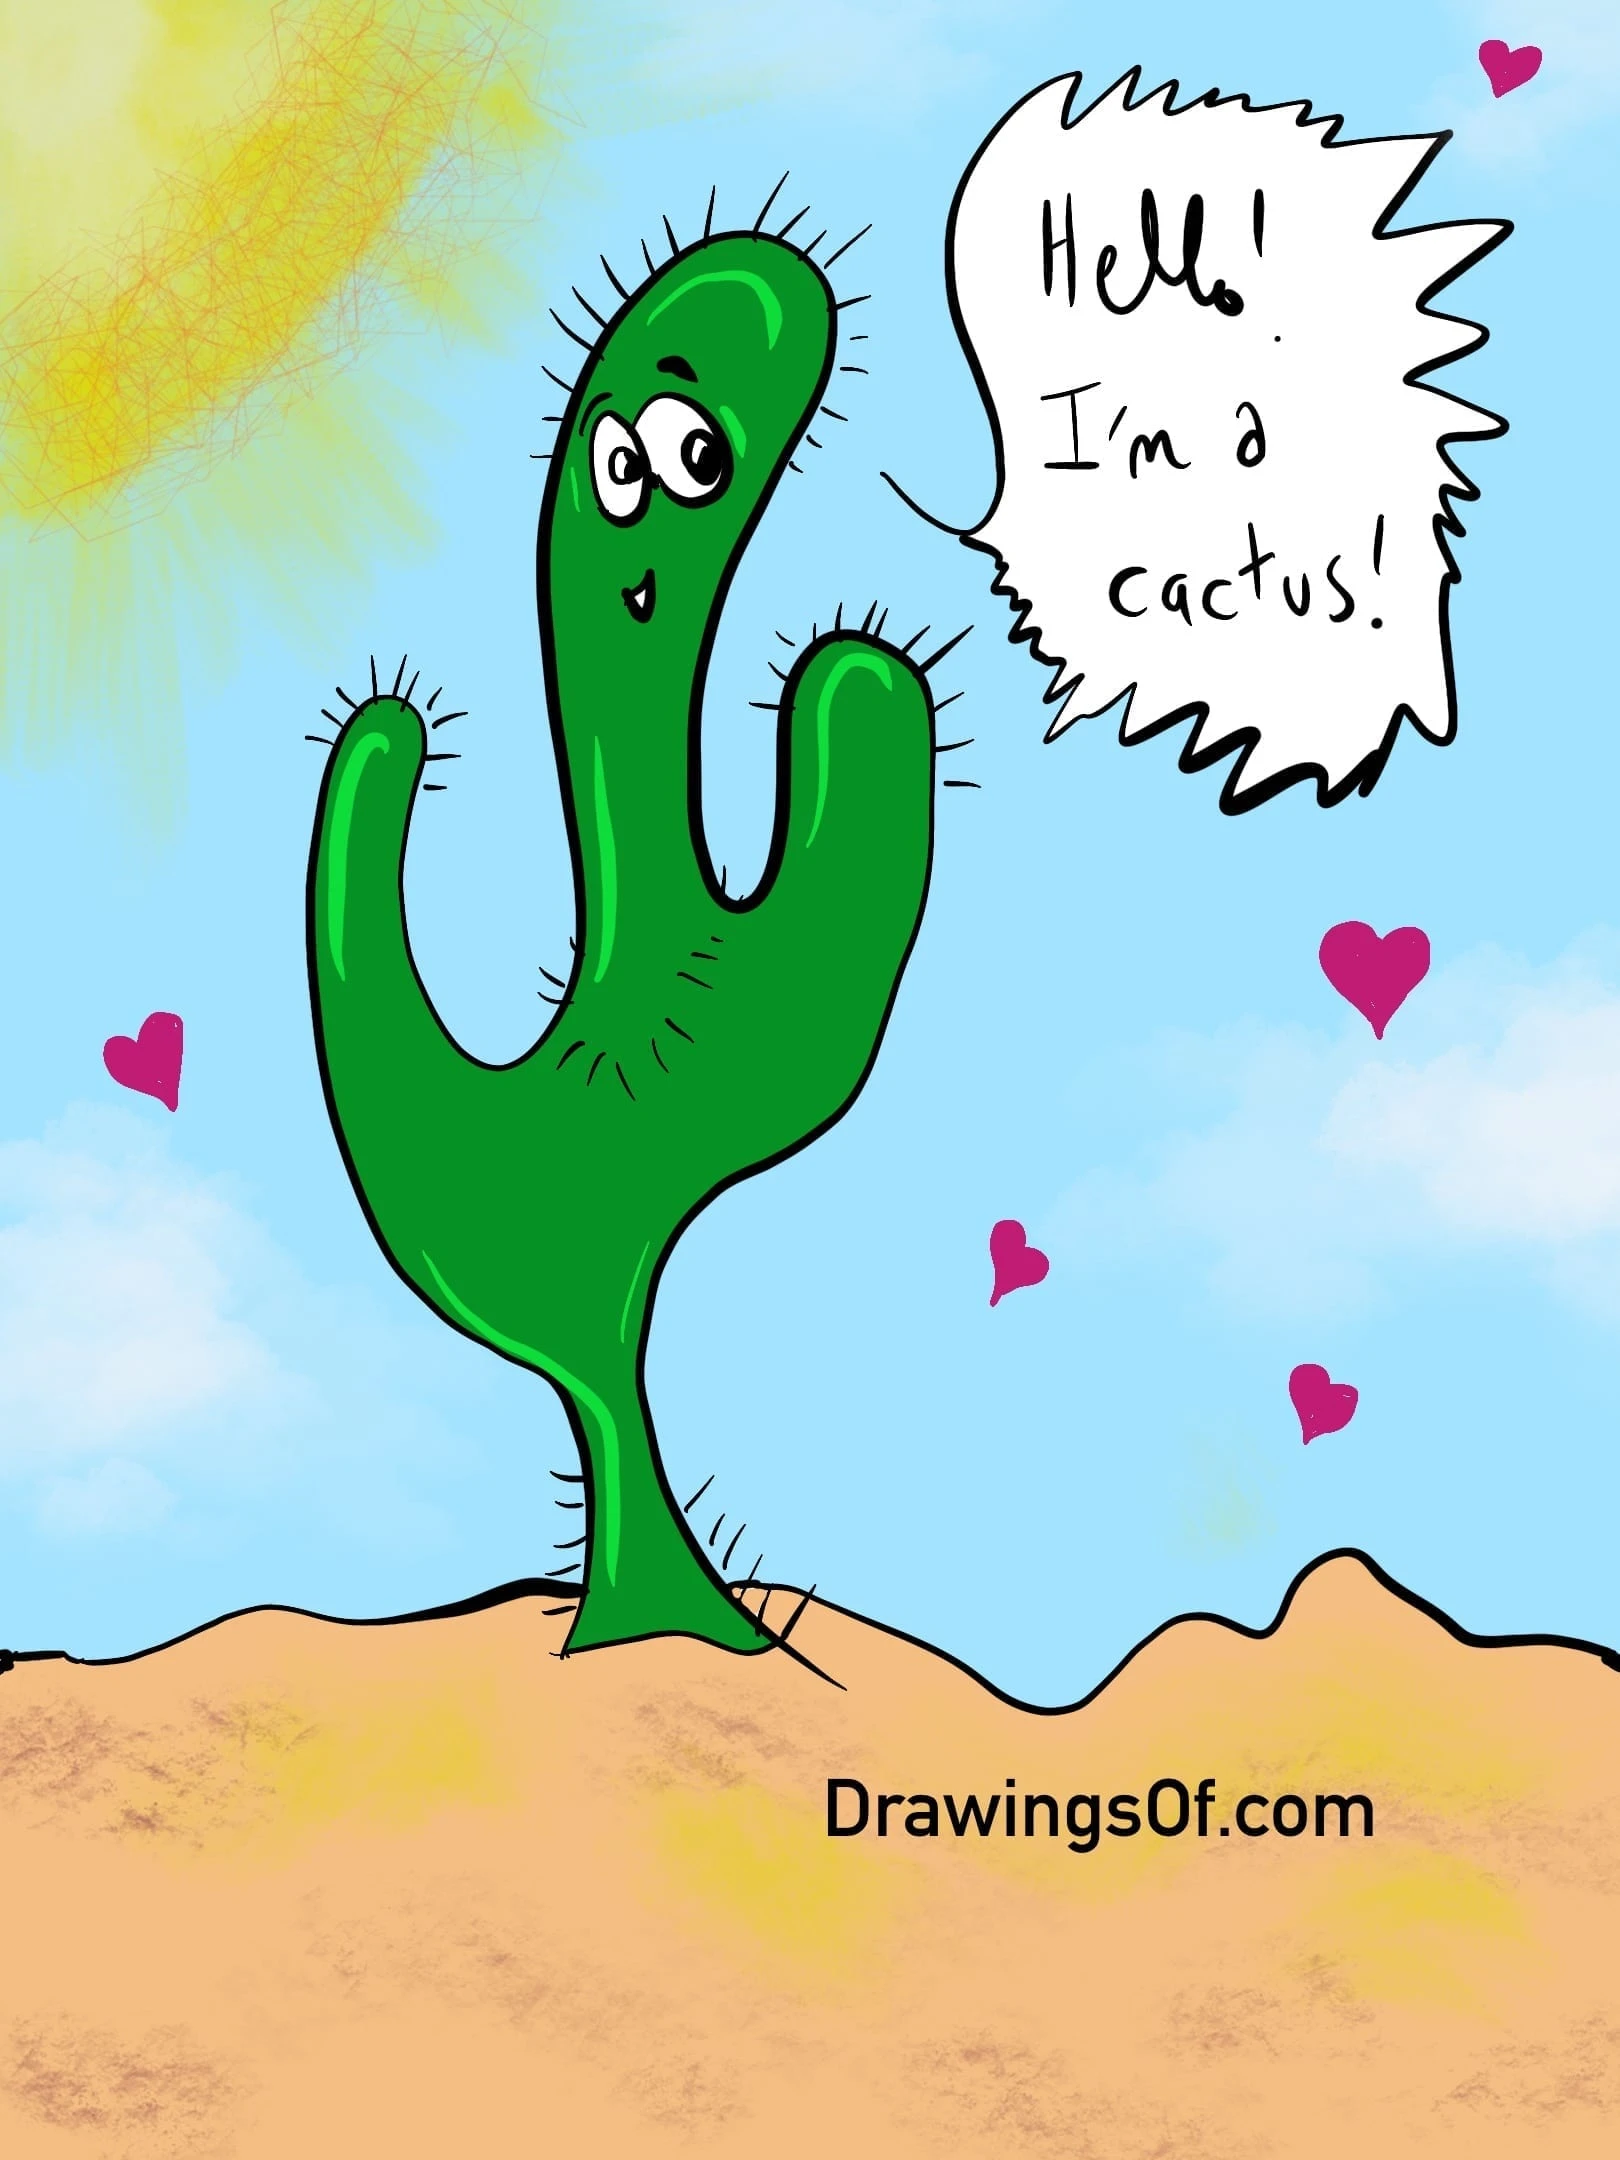 Cactus cartoon